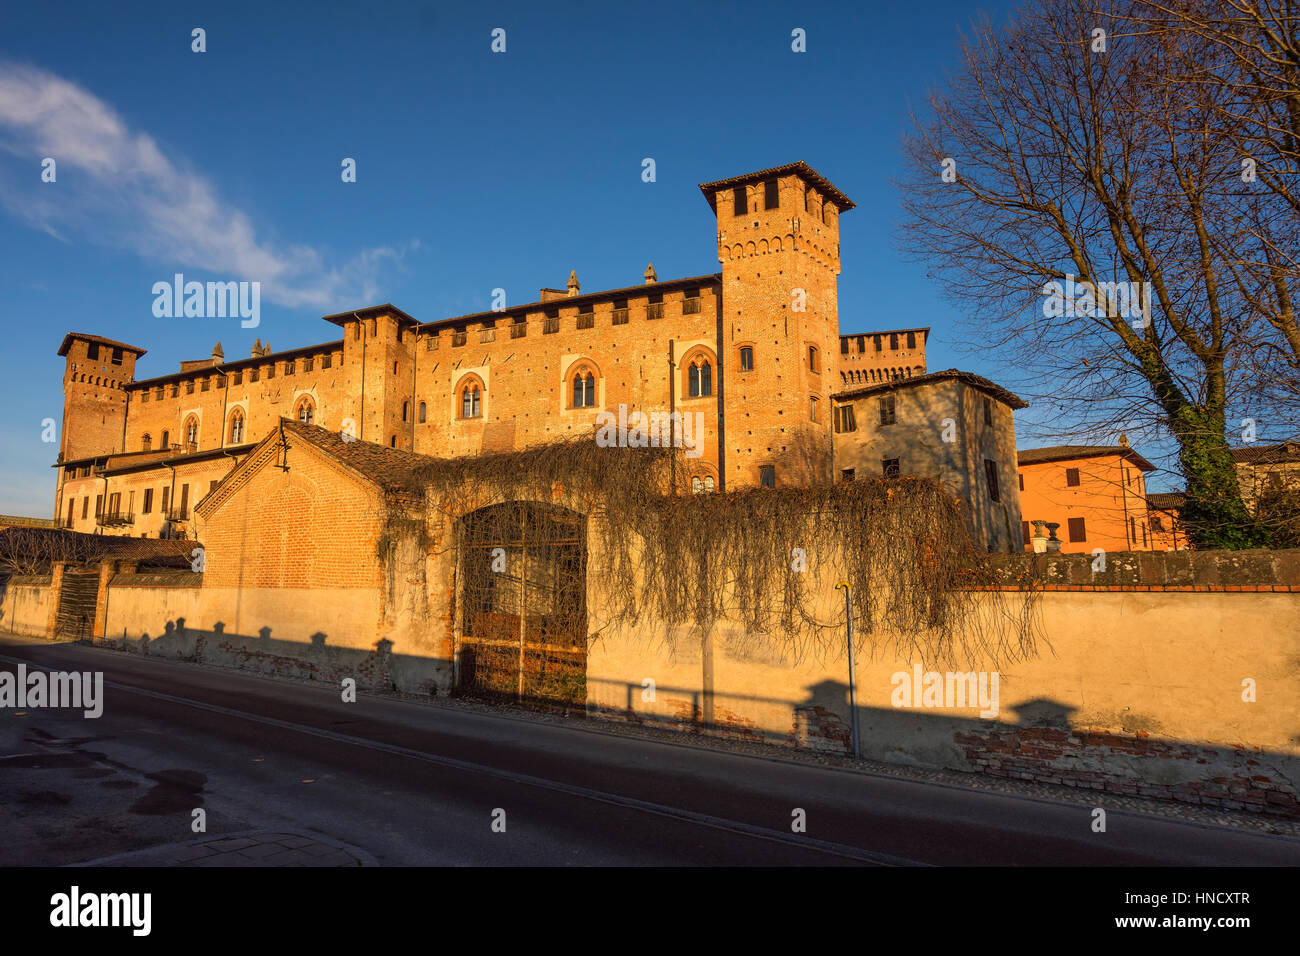 Moyen Âge château 'Morando bolognini' au coucher du soleil, construit au xiiie siècle à Sant'Angelo Lodigiano, Lombardie en Italie. Banque D'Images